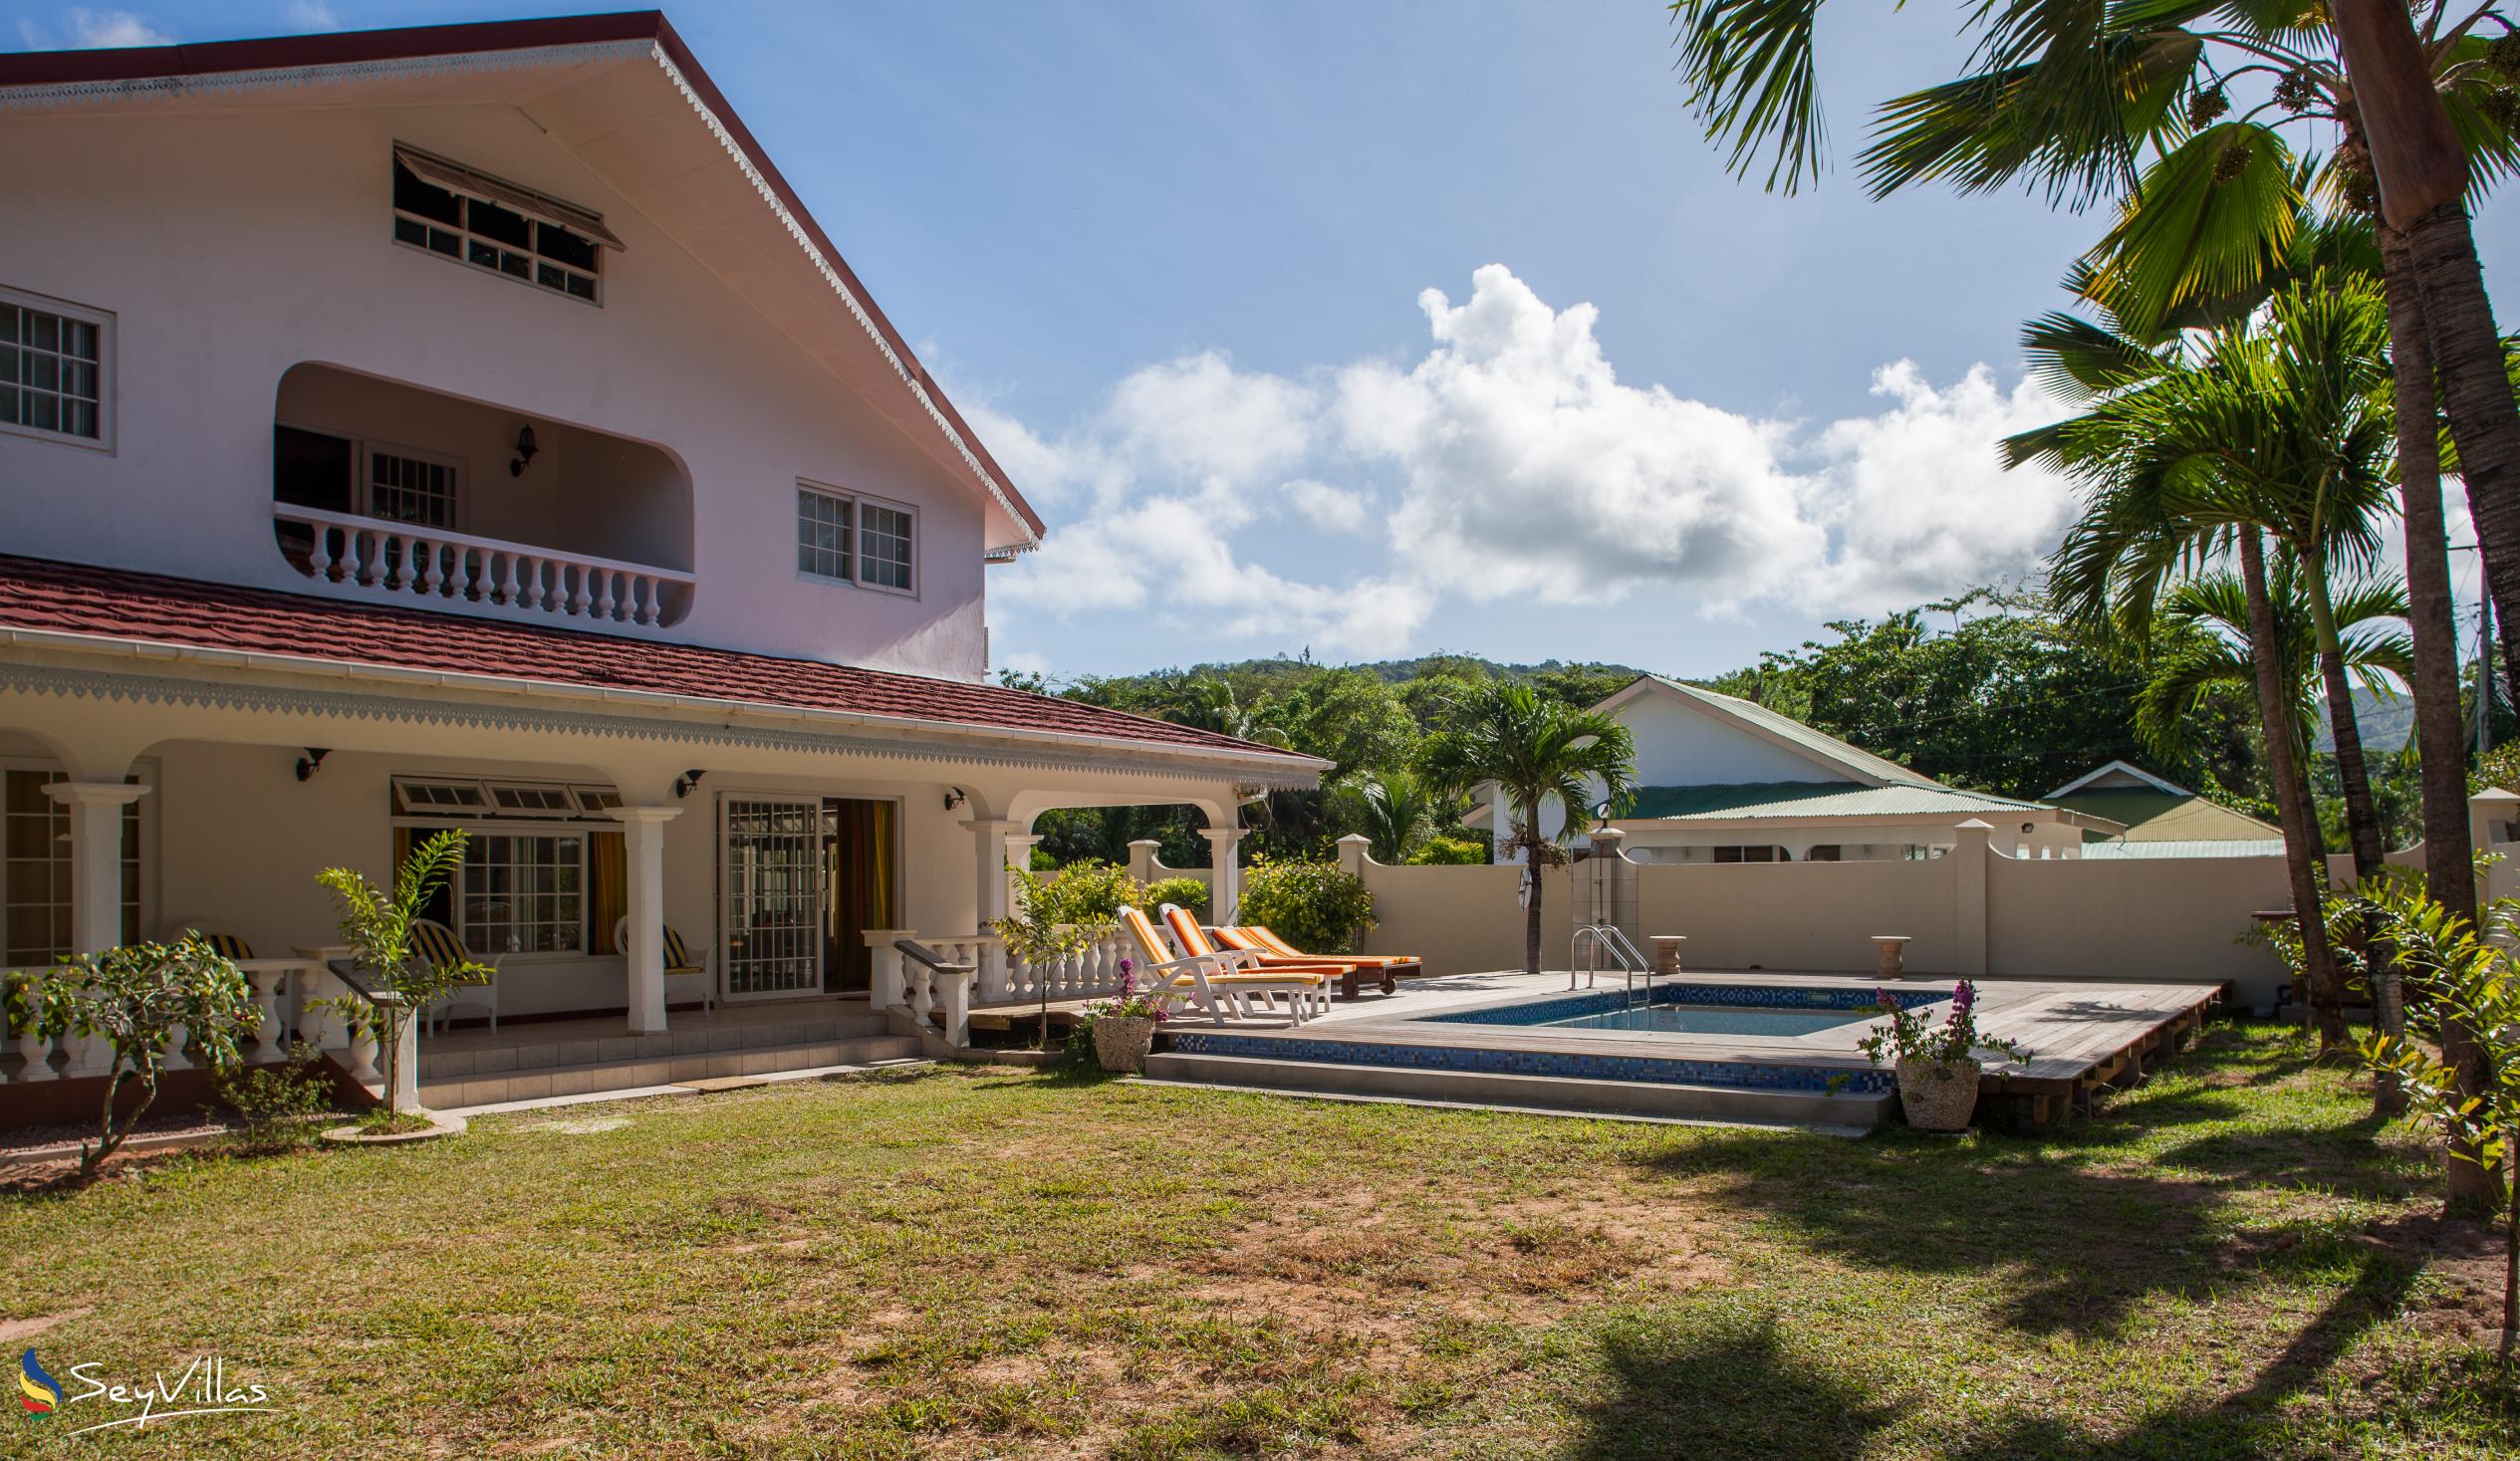 Foto 4: Villa Confort - Aussenbereich - Praslin (Seychellen)